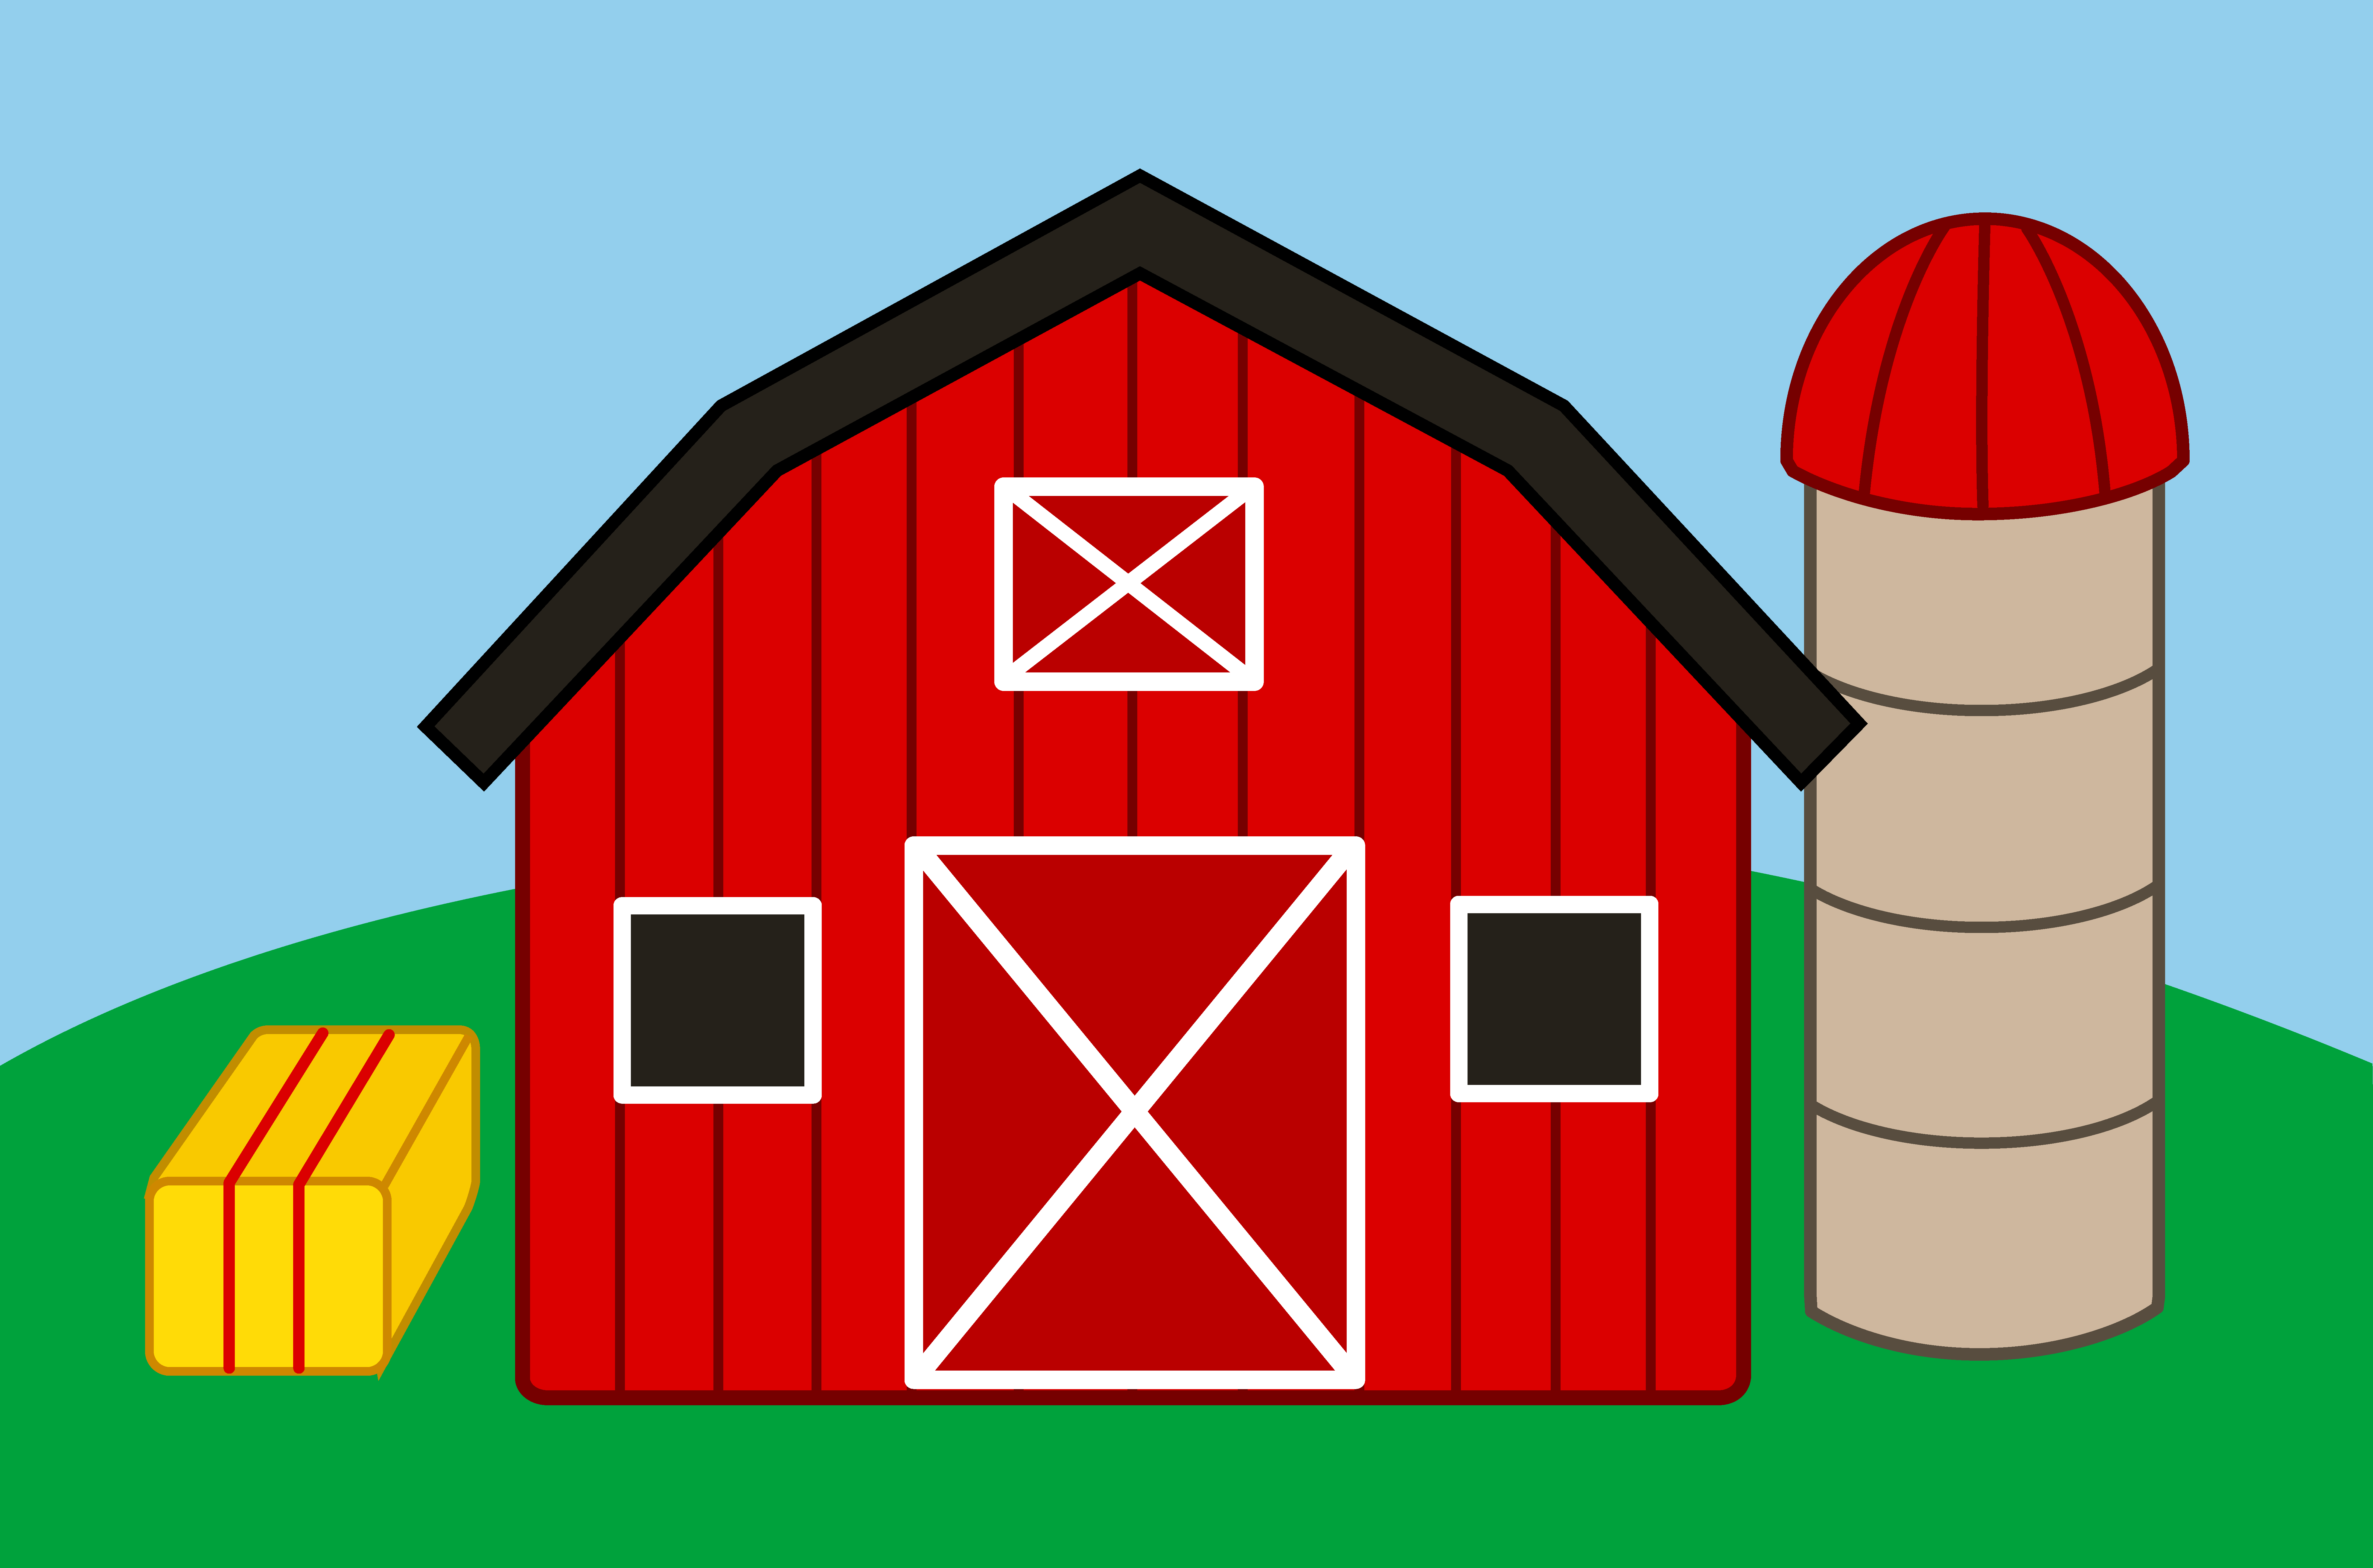 Farm house clipart.